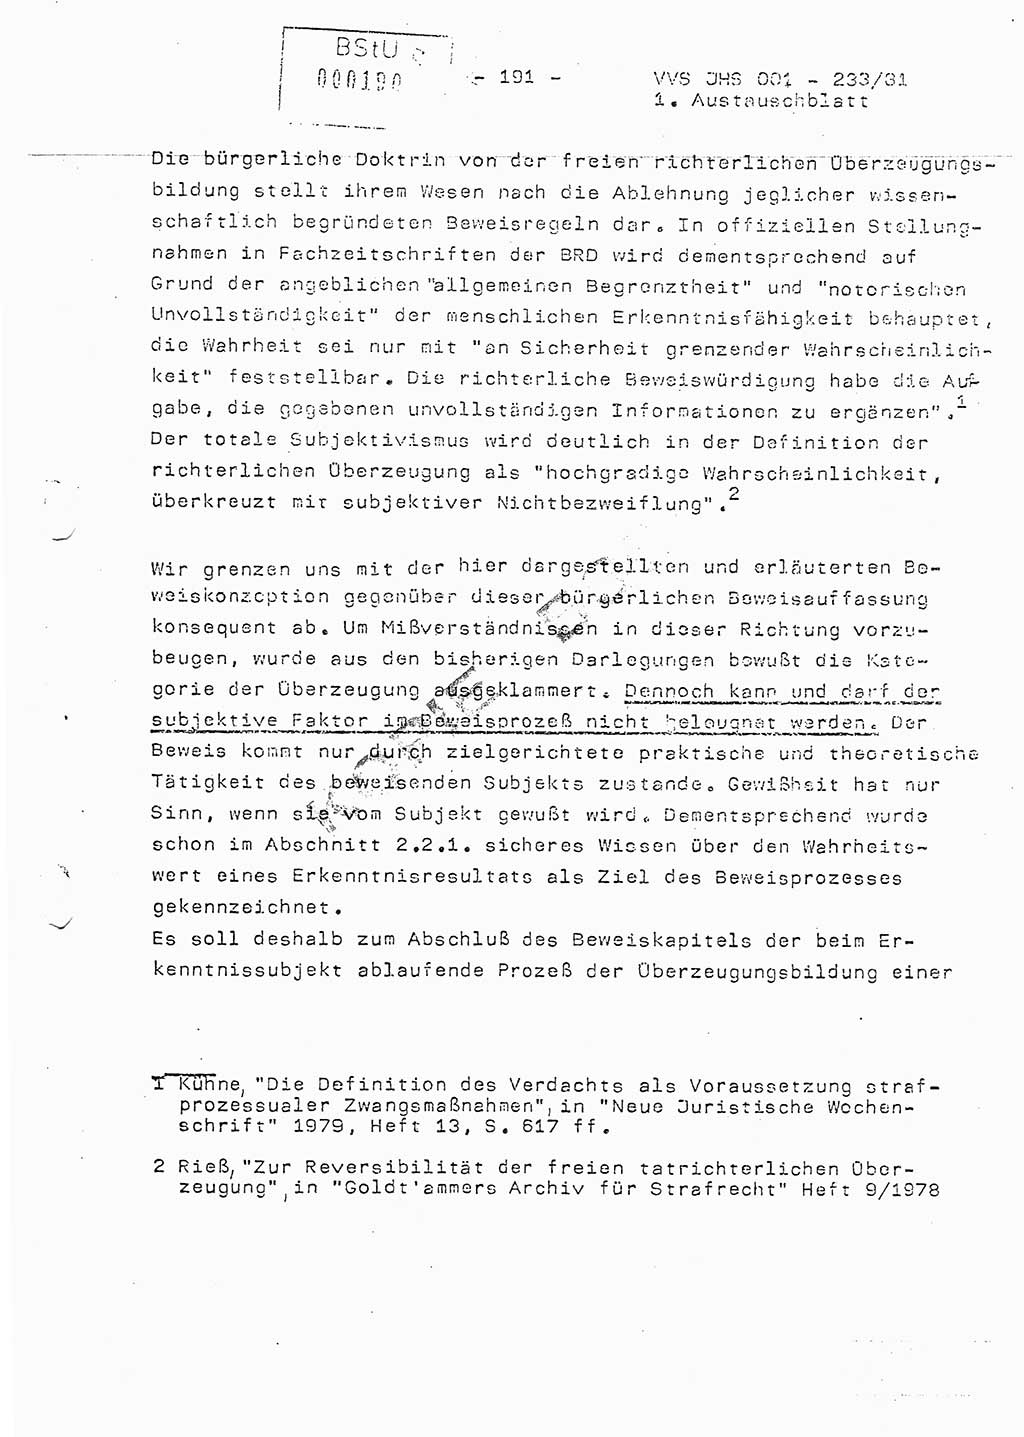 Dissertation Oberstleutnant Horst Zank (JHS), Oberstleutnant Dr. Karl-Heinz Knoblauch (JHS), Oberstleutnant Gustav-Adolf Kowalewski (HA Ⅸ), Oberstleutnant Wolfgang Plötner (HA Ⅸ), Ministerium für Staatssicherheit (MfS) [Deutsche Demokratische Republik (DDR)], Juristische Hochschule (JHS), Vertrauliche Verschlußsache (VVS) o001-233/81, Potsdam 1981, Blatt 191 (Diss. MfS DDR JHS VVS o001-233/81 1981, Bl. 191)